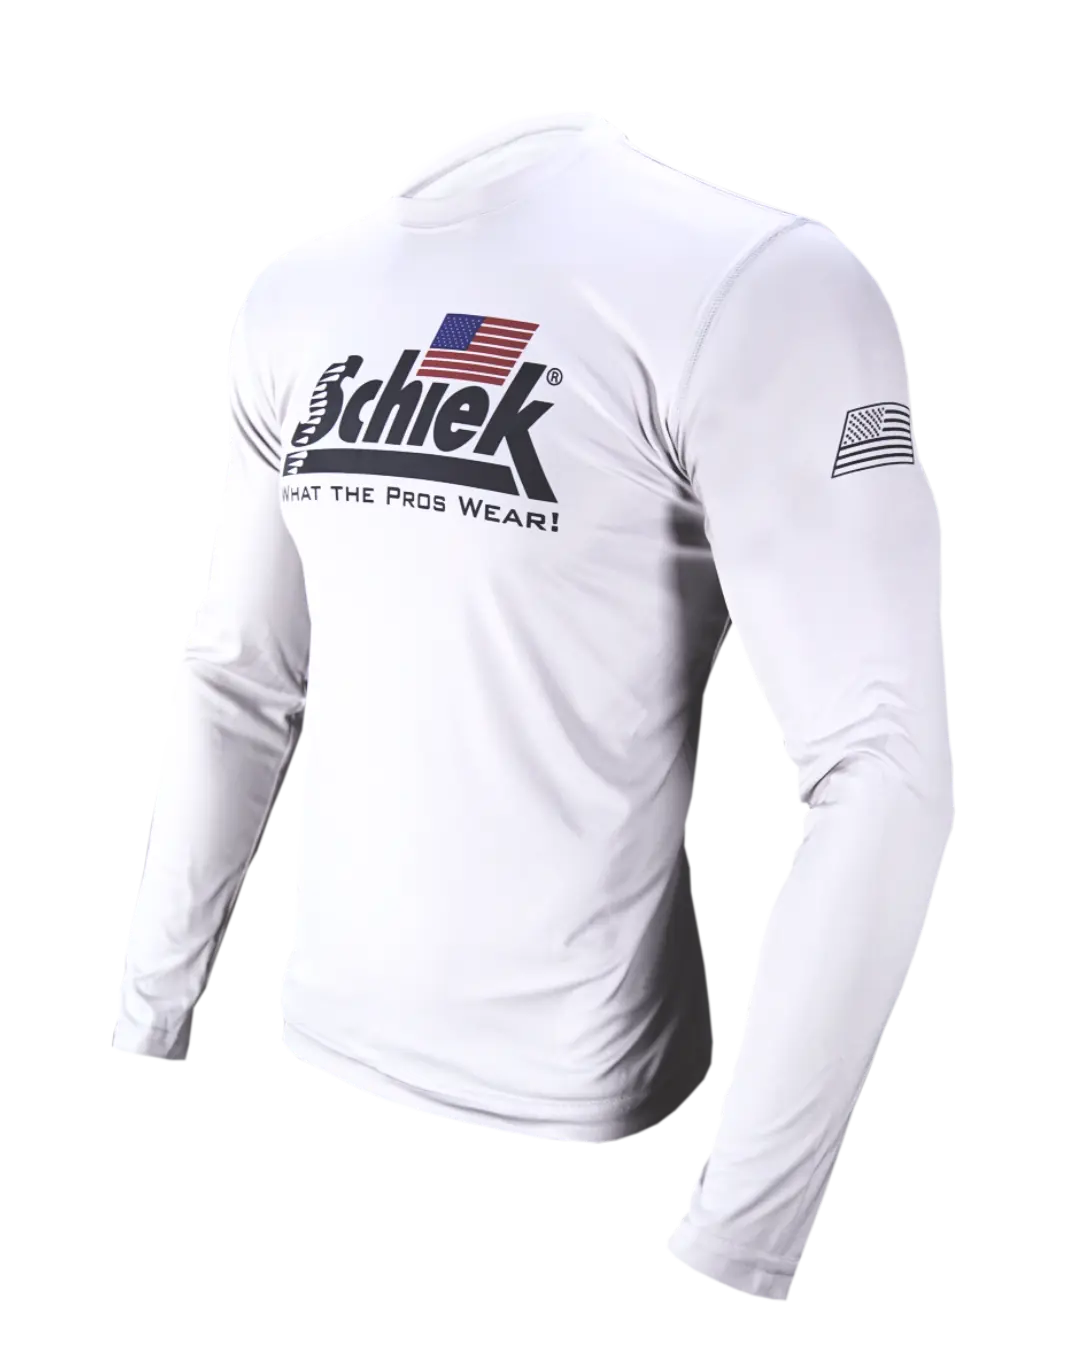 Schiek PolyHD Long Sleeve T-Shirt - Schiek Sports